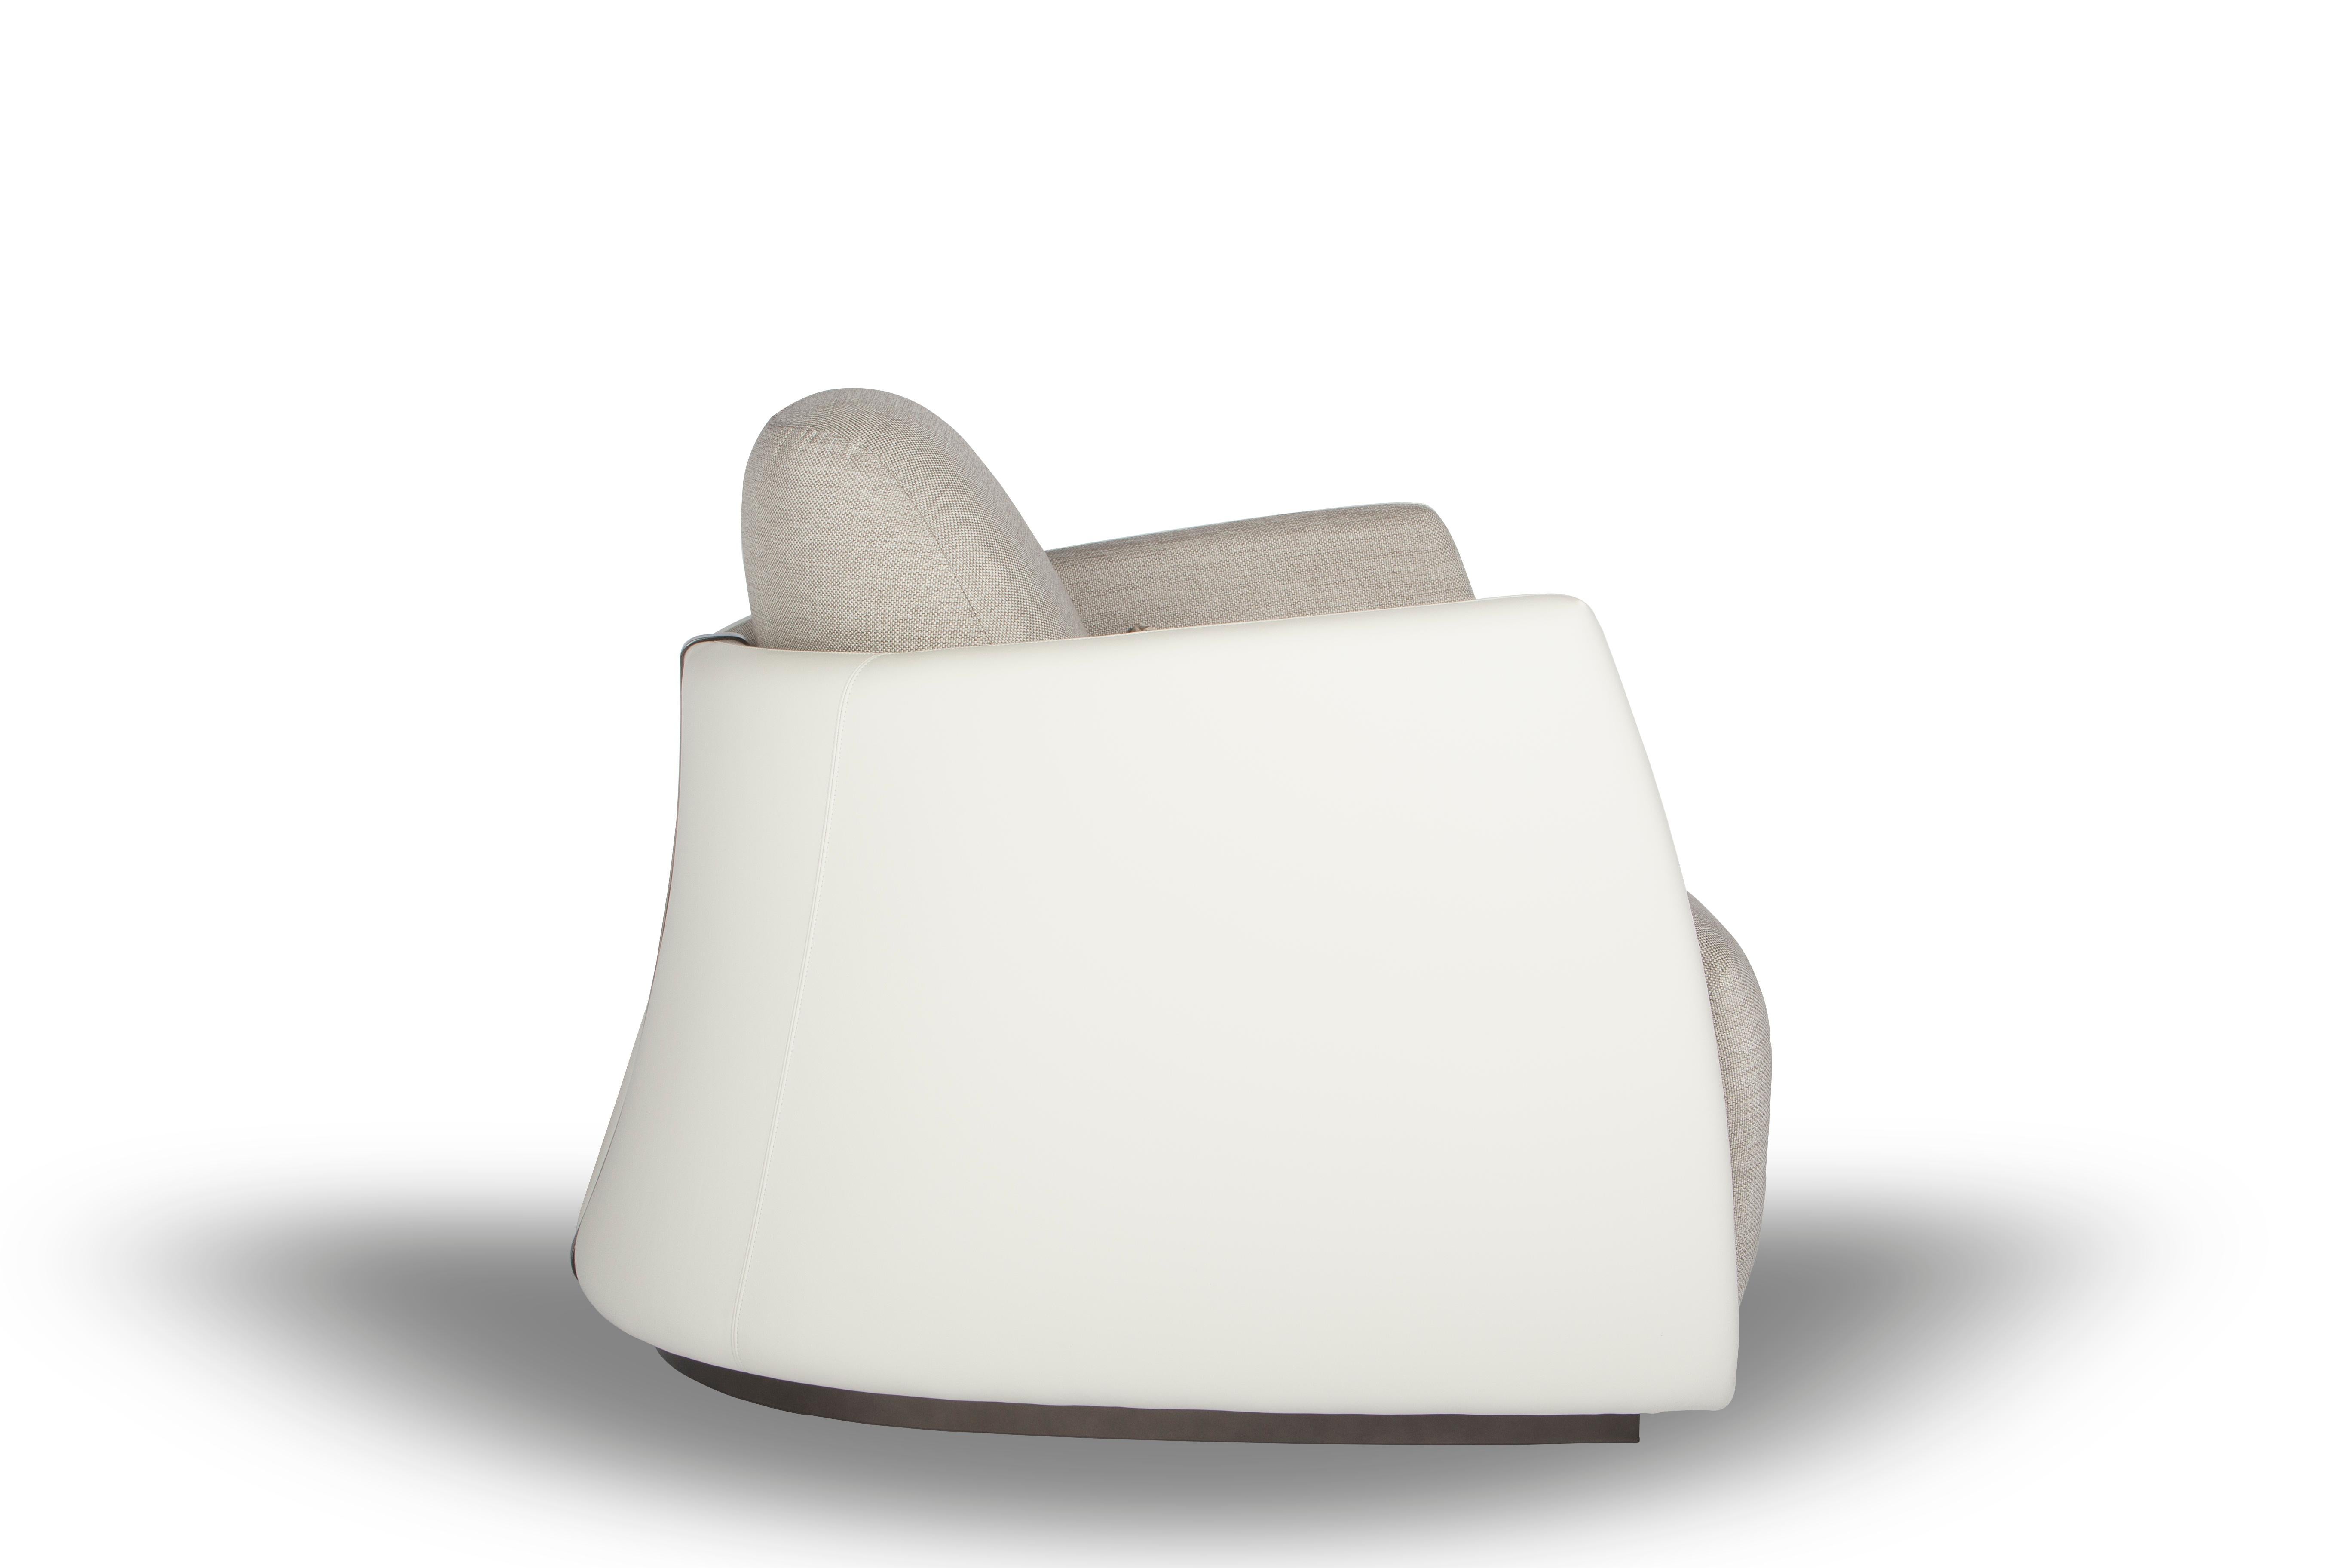 Das Design des PALM ROYAL Sessels zeichnet sich durch einen einzigartigen halbrunden, doppelt gekrümmten Körper aus, der diesem Sessel Festigkeit und Eleganz verleiht. Im Rückenbereich wird die Finesse und Raffinesse durch eine edle, in die